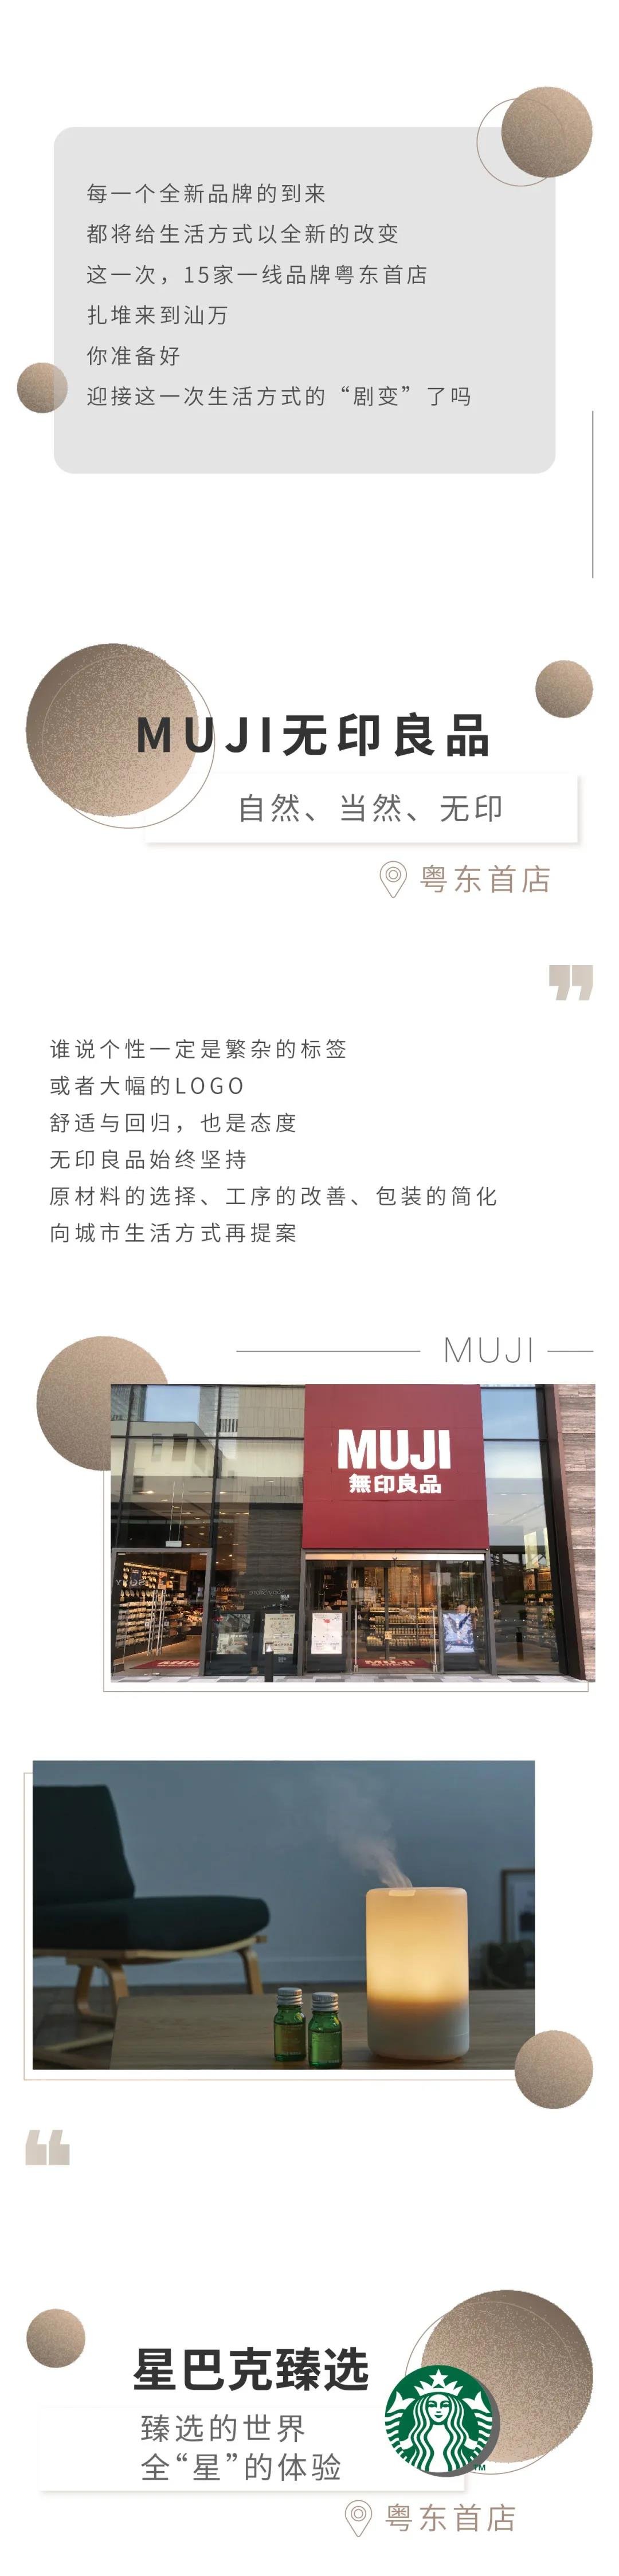 MUJI、POP MART、星巴克臻选等一大波粤东首店登陆万象城